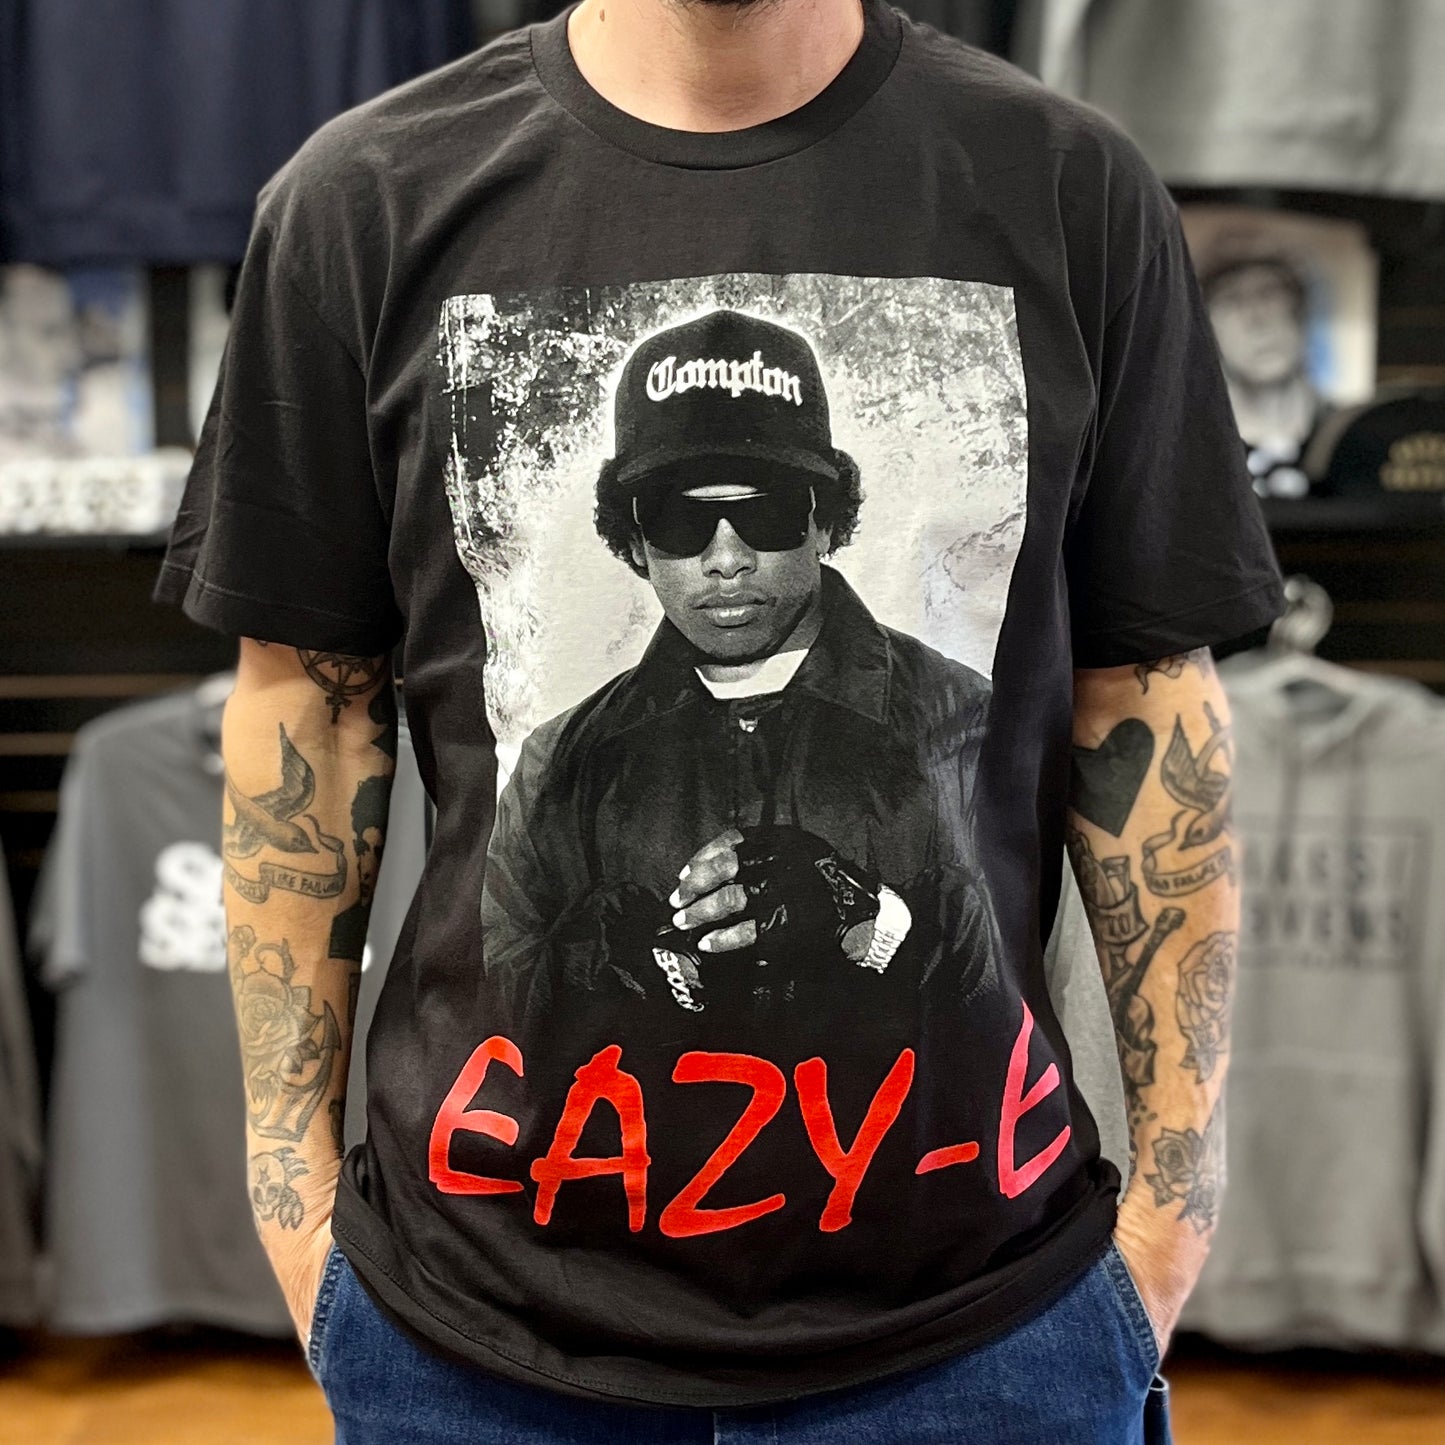 Eazy-E T-Shirt - Compton